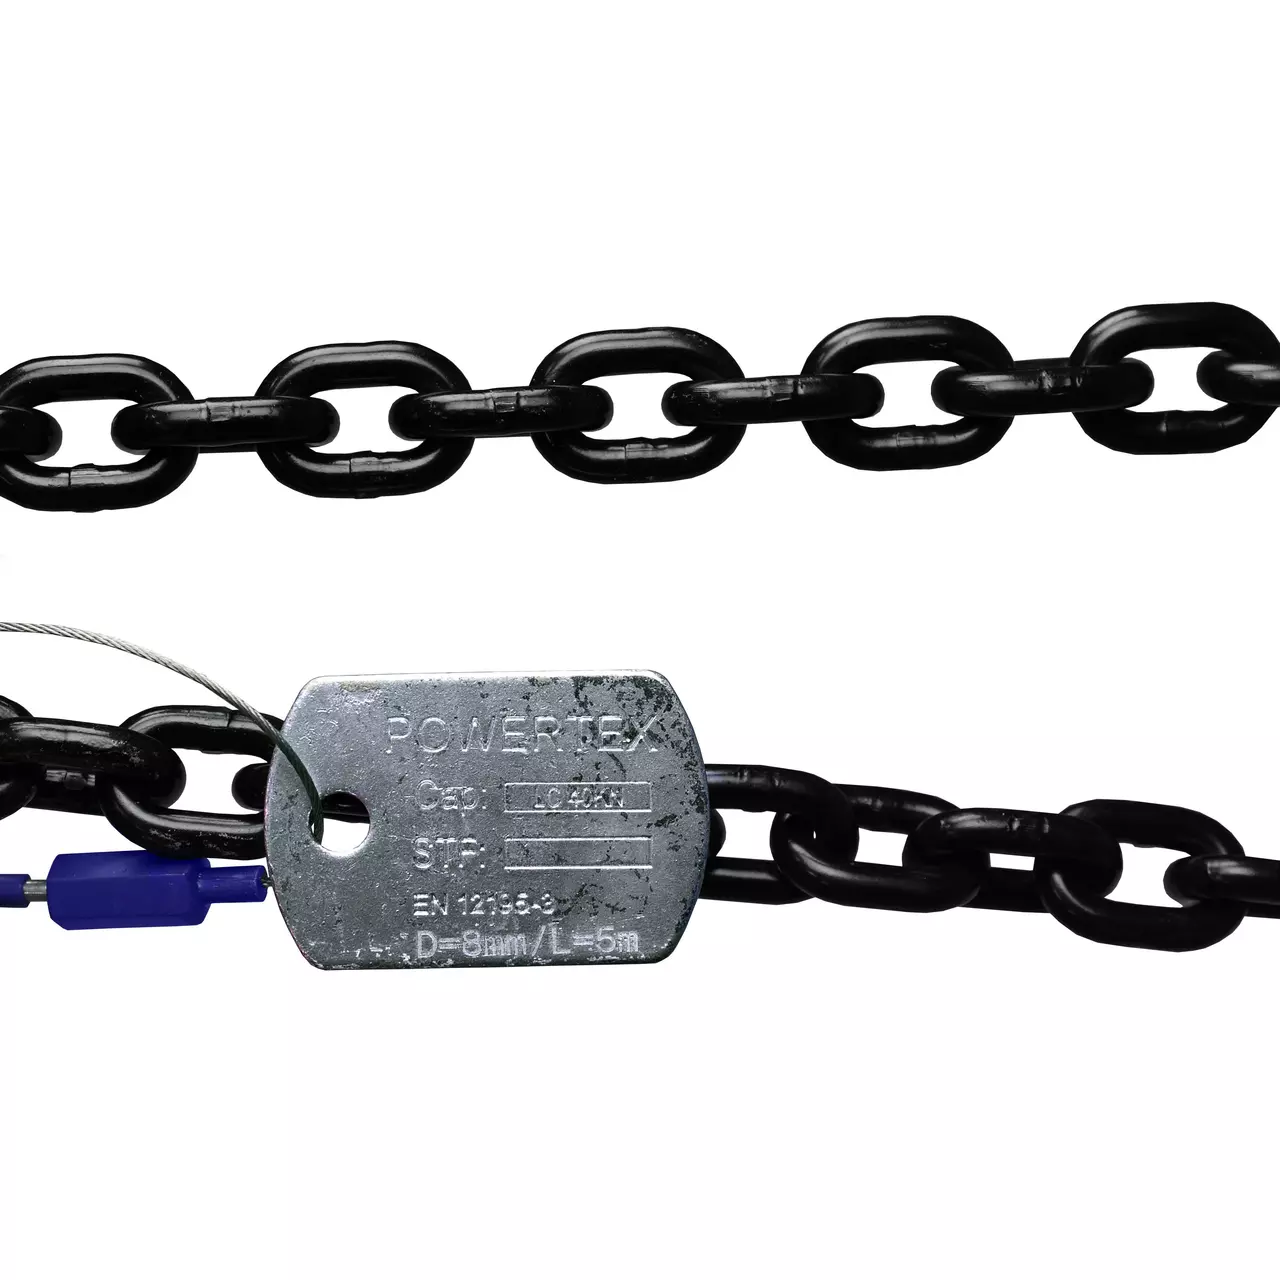 Lashing Chain POWERTEX PLC